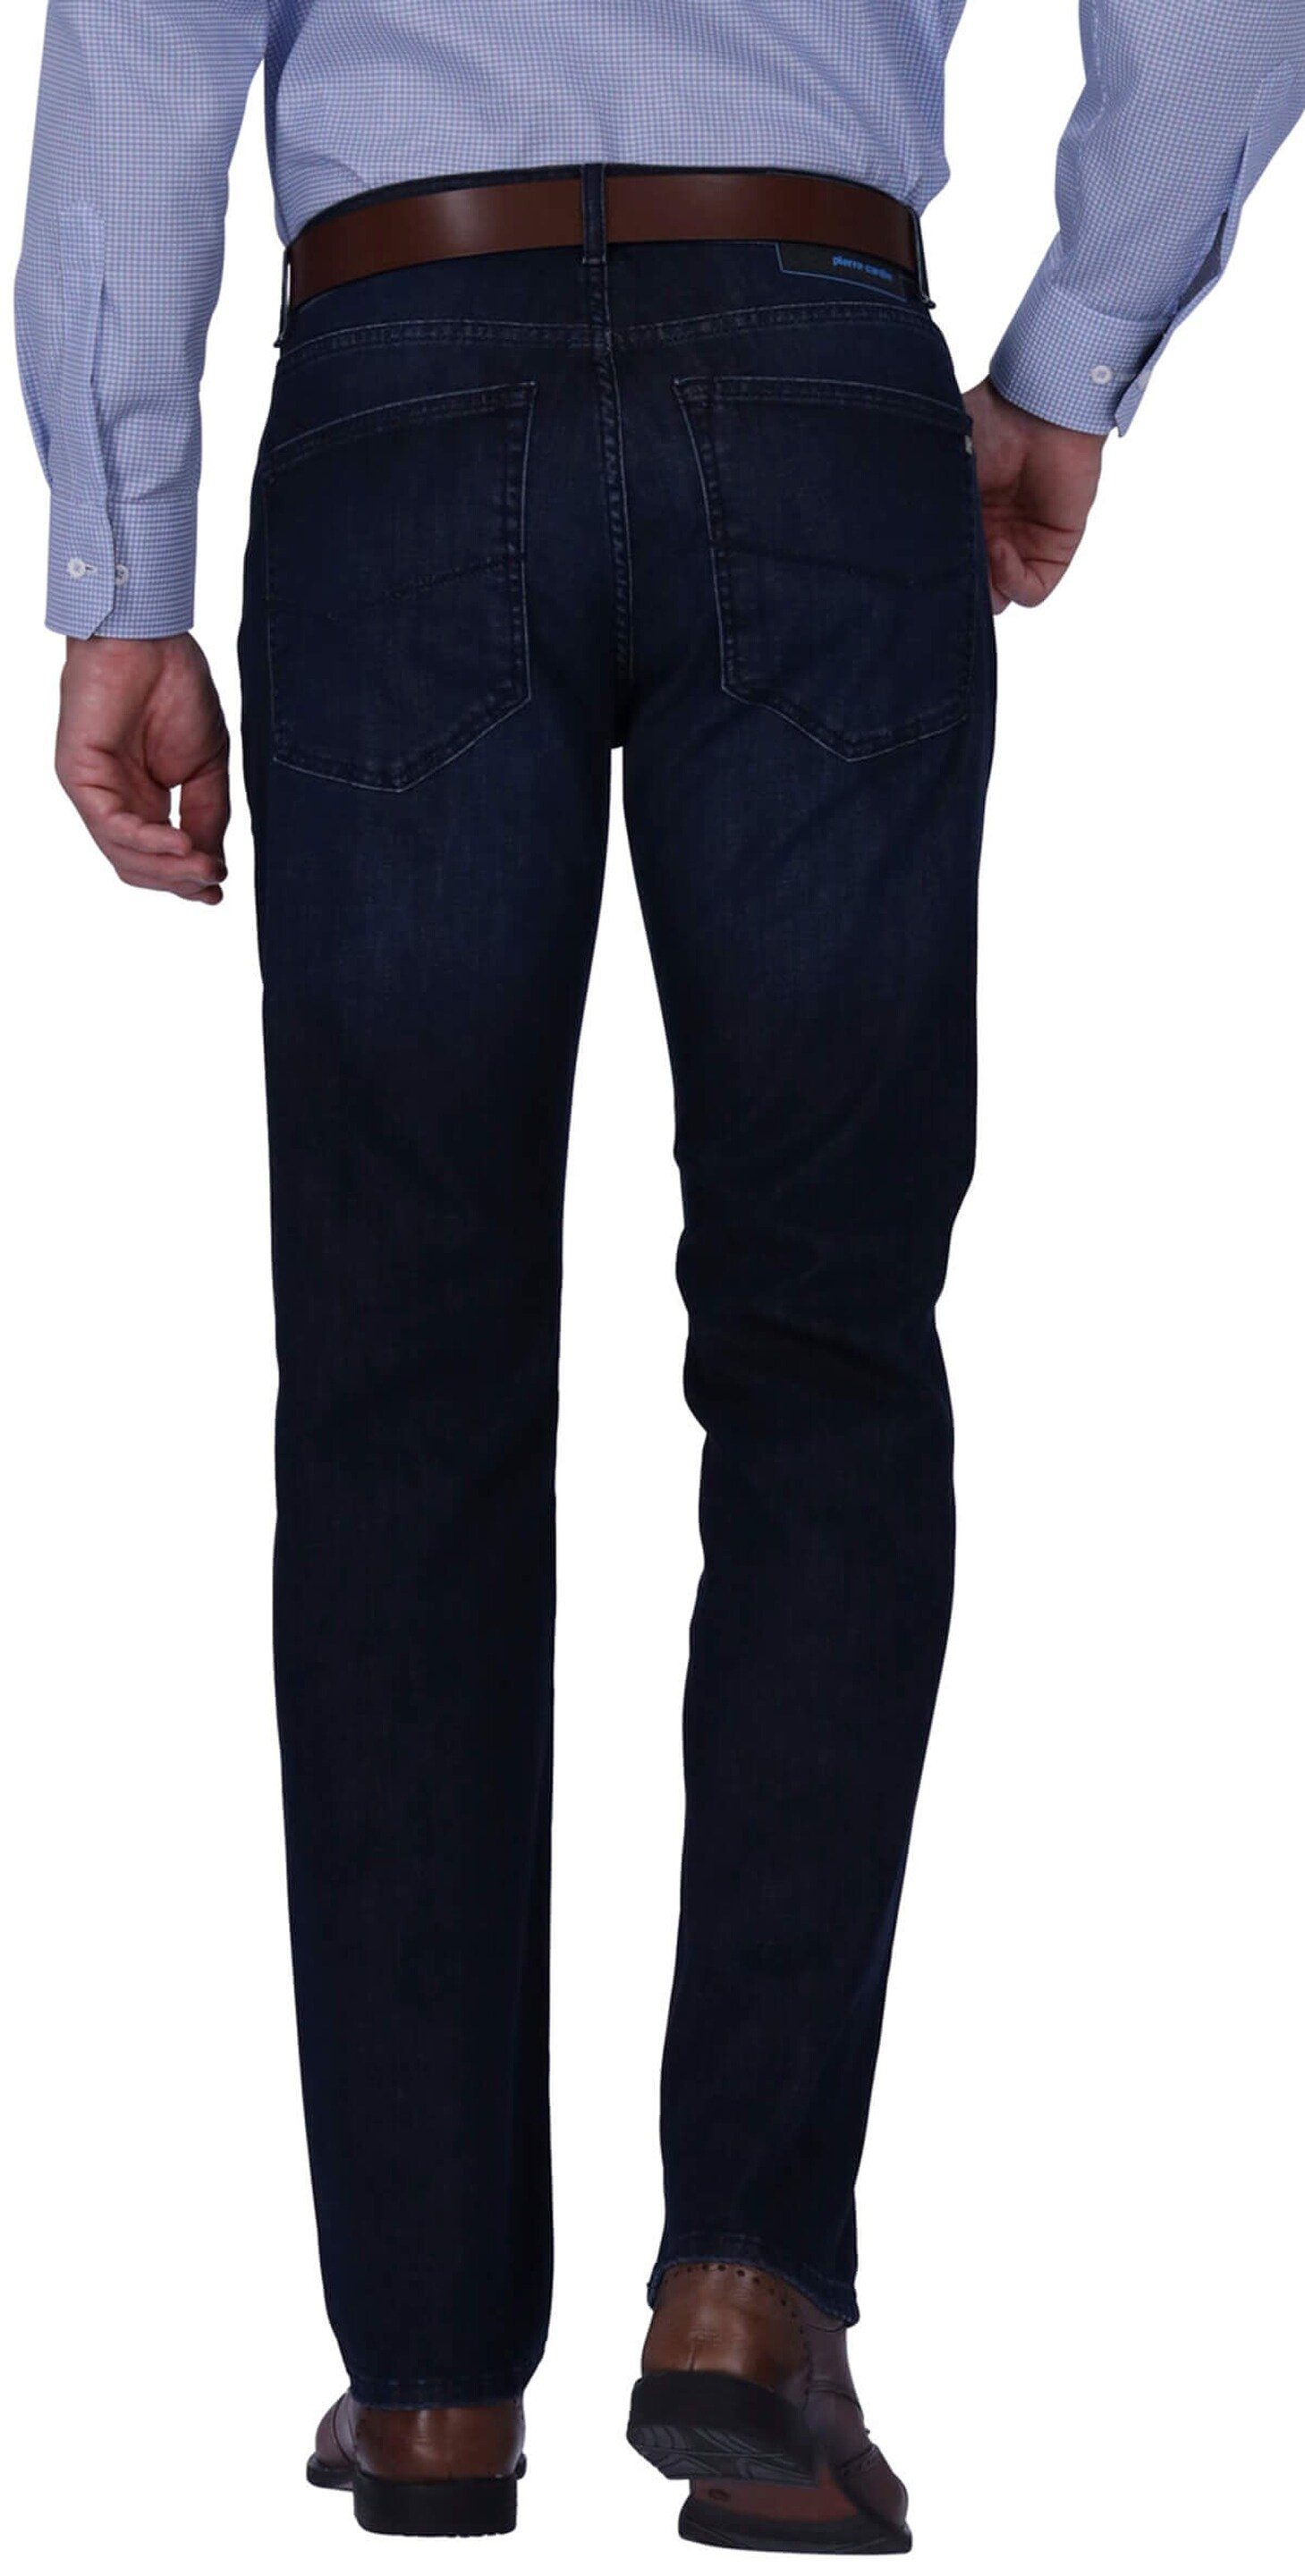 Modern Five-Pocket-Jeans PIERRE Clima Pierre darkblue Control Lyon CARDIN Fit Cardin 5-Pocket-Jeans